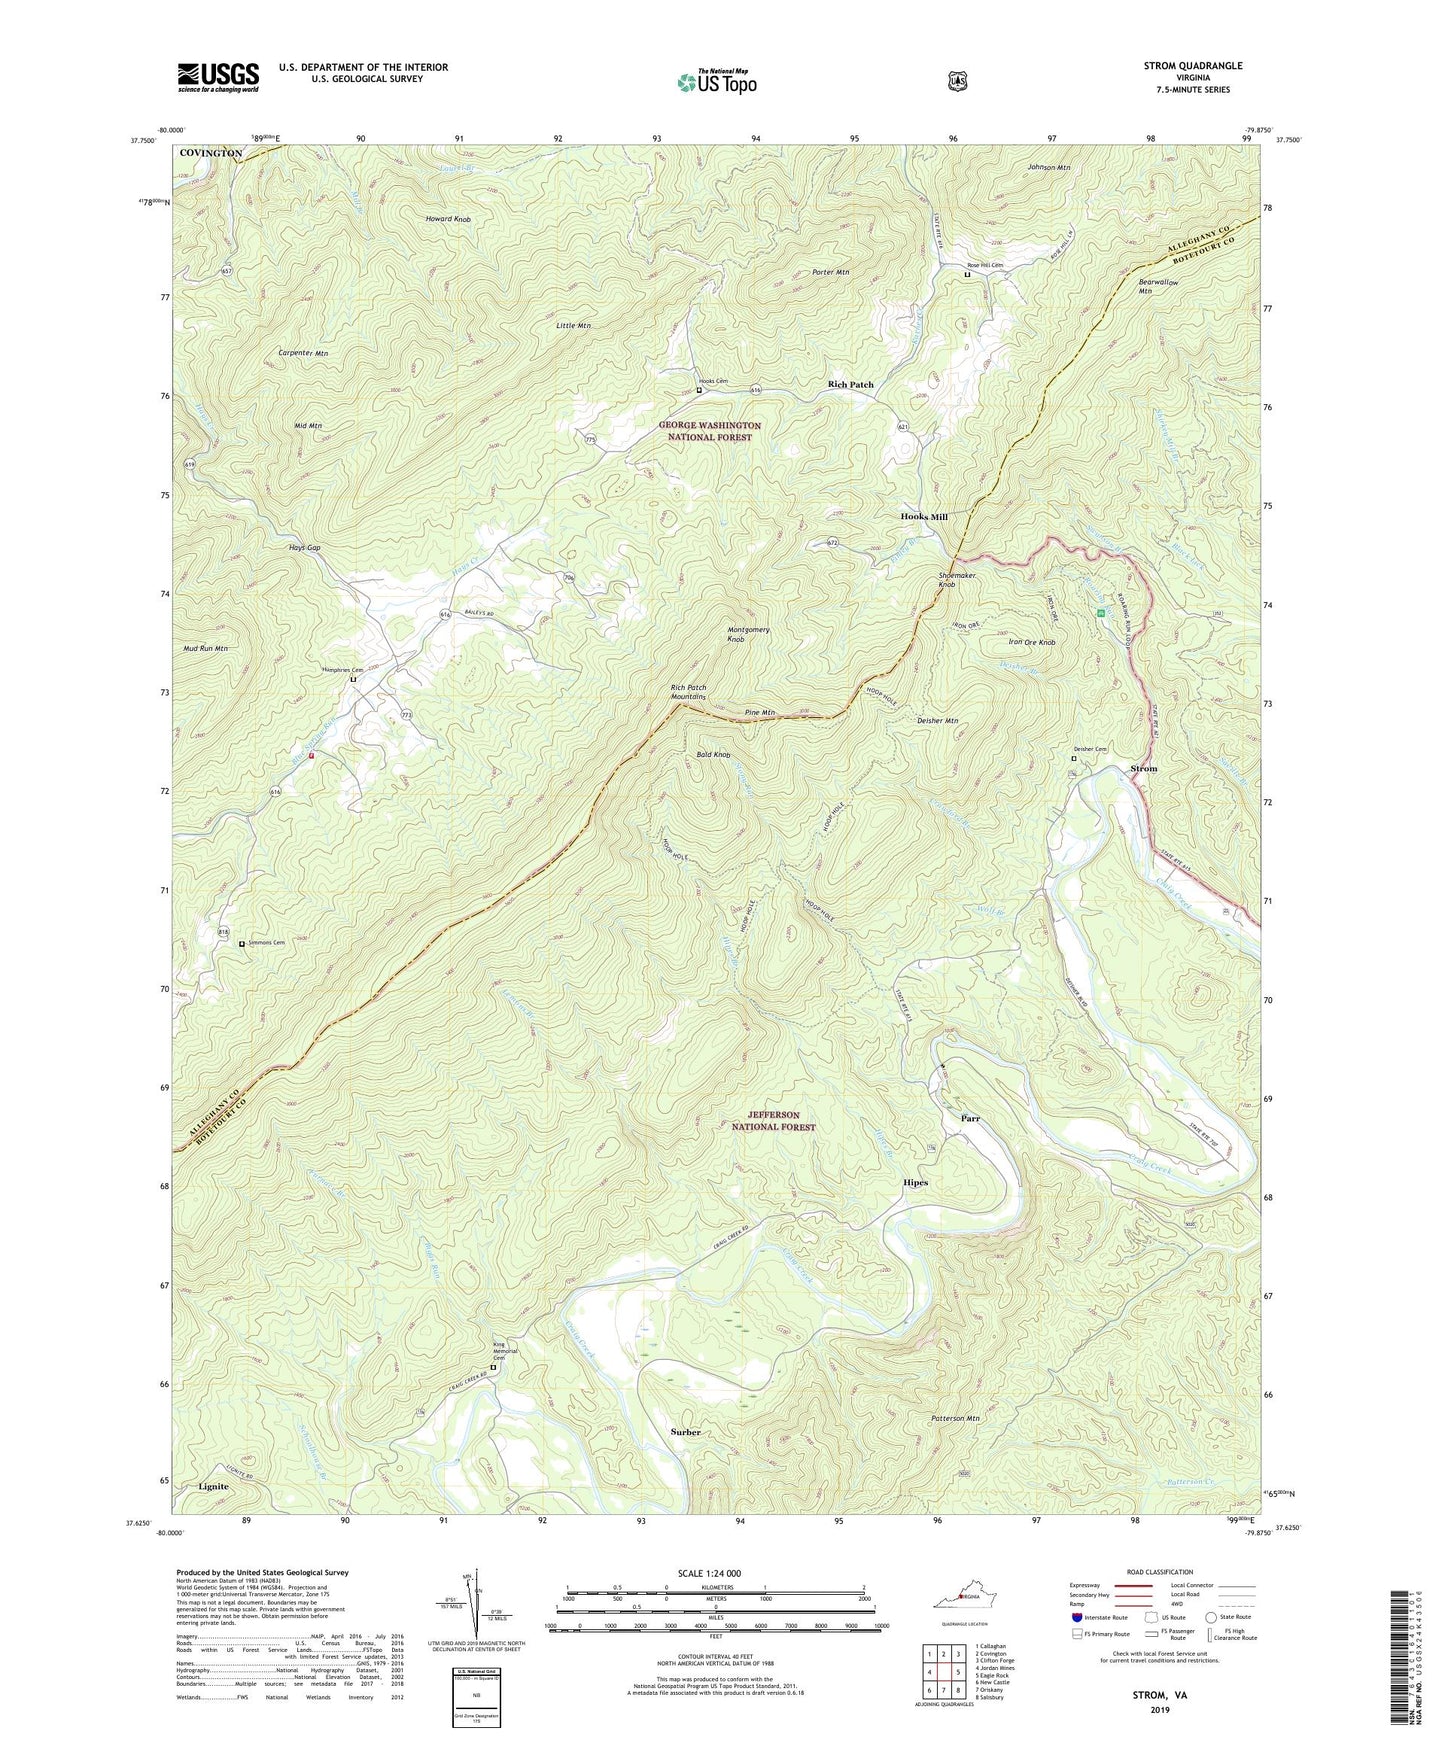 Strom Virginia US Topo Map Image